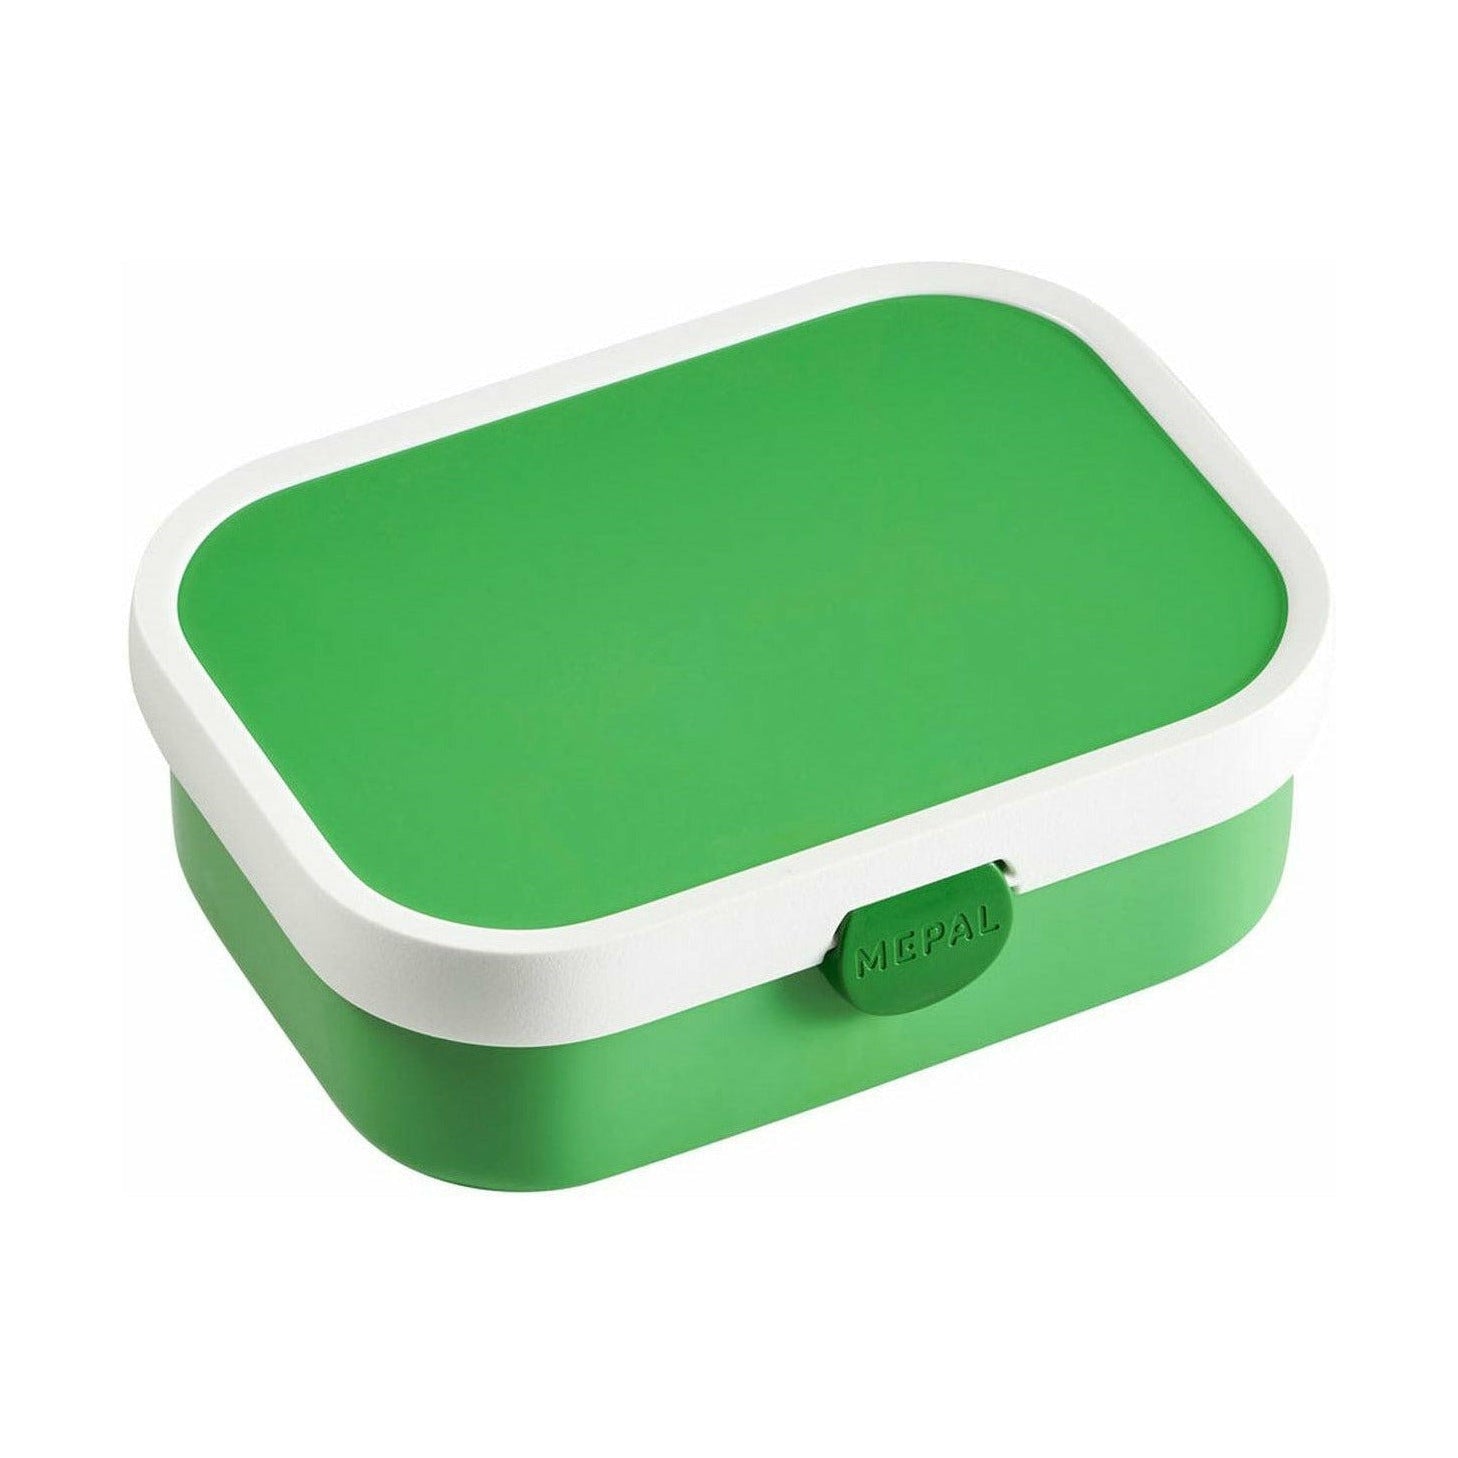 Mepal obědová krabička kampus s Bento vložkou, zelená